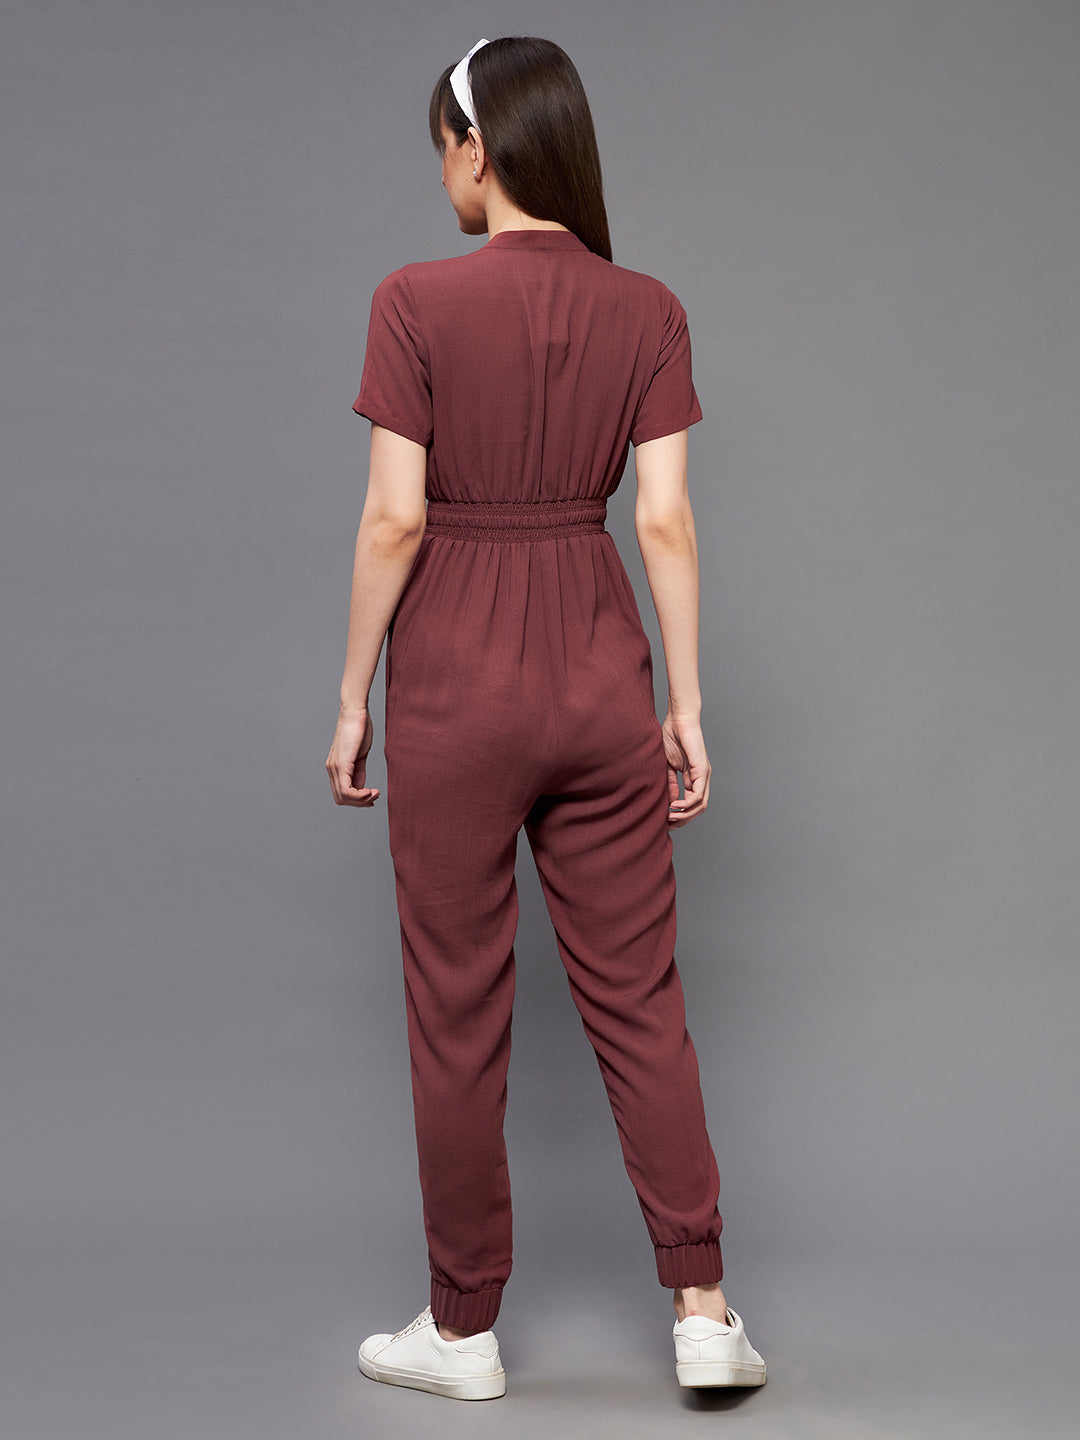 Women's Light Burgundy V-Neck Short Sleeve Solid Straight Leg Polyester Regular Jumpsuit